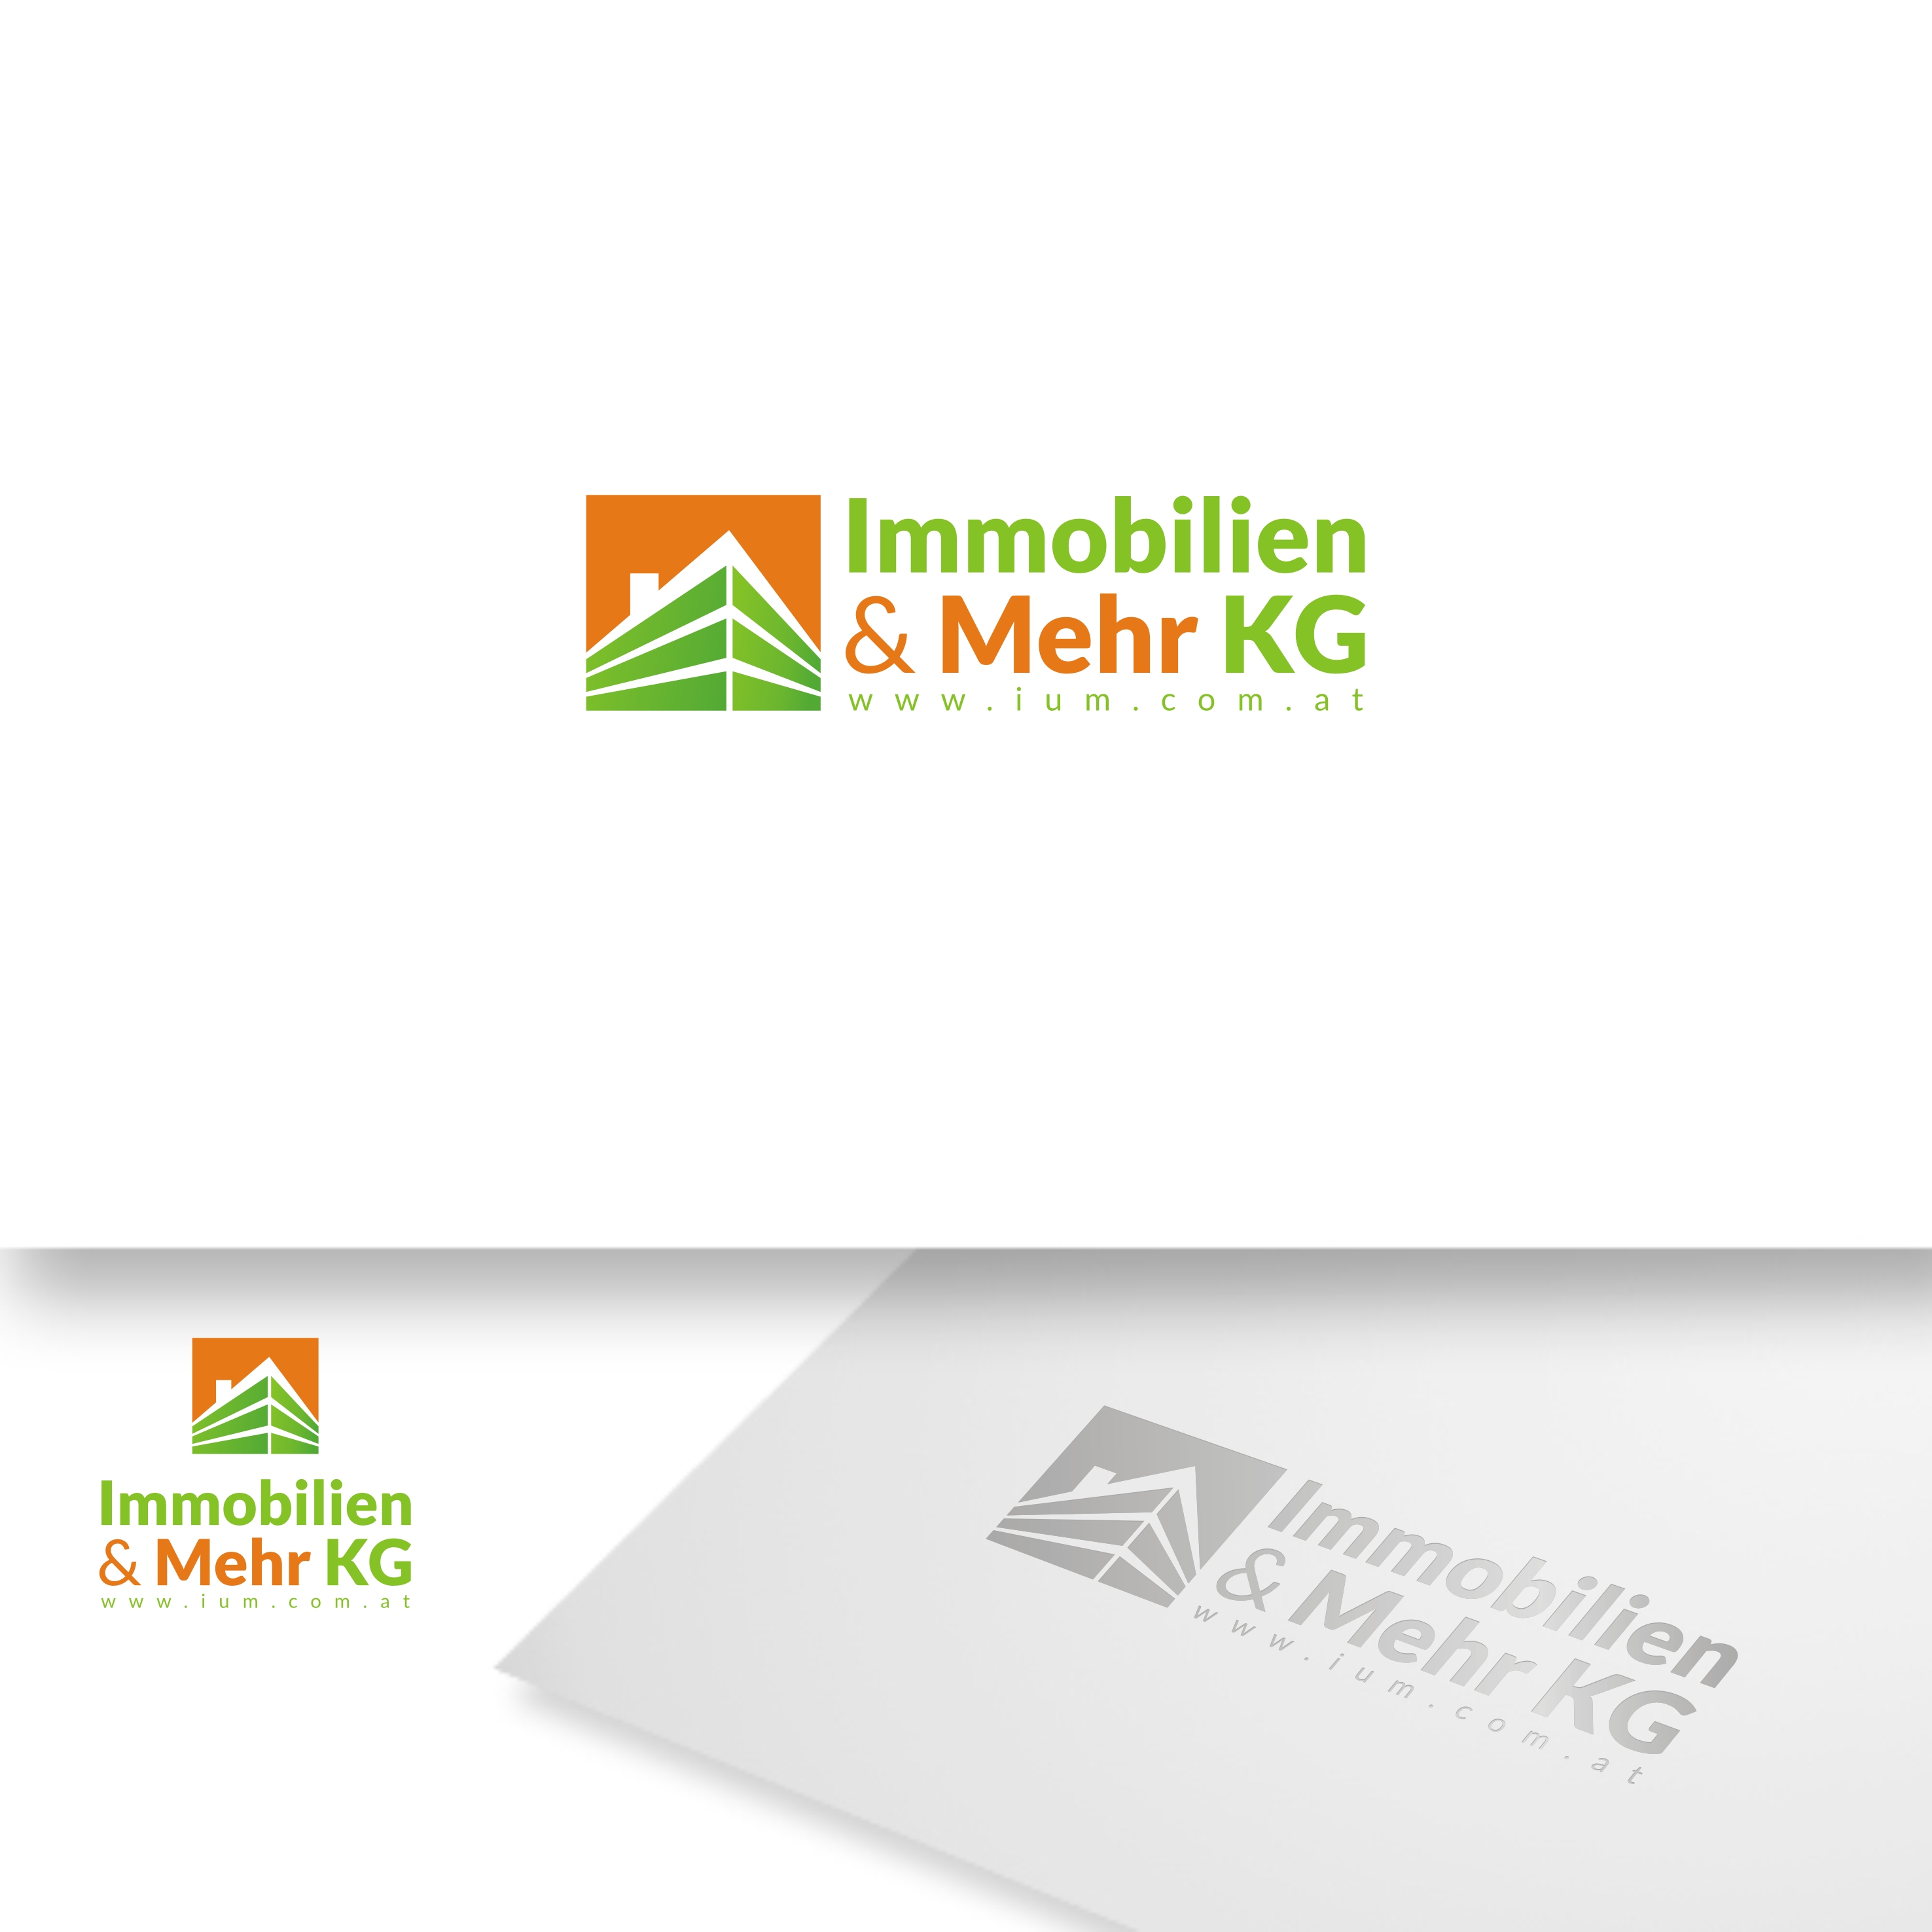 Logo Design 9 Ium Immobilien Amp Mehr Kg Design Project Designcontest